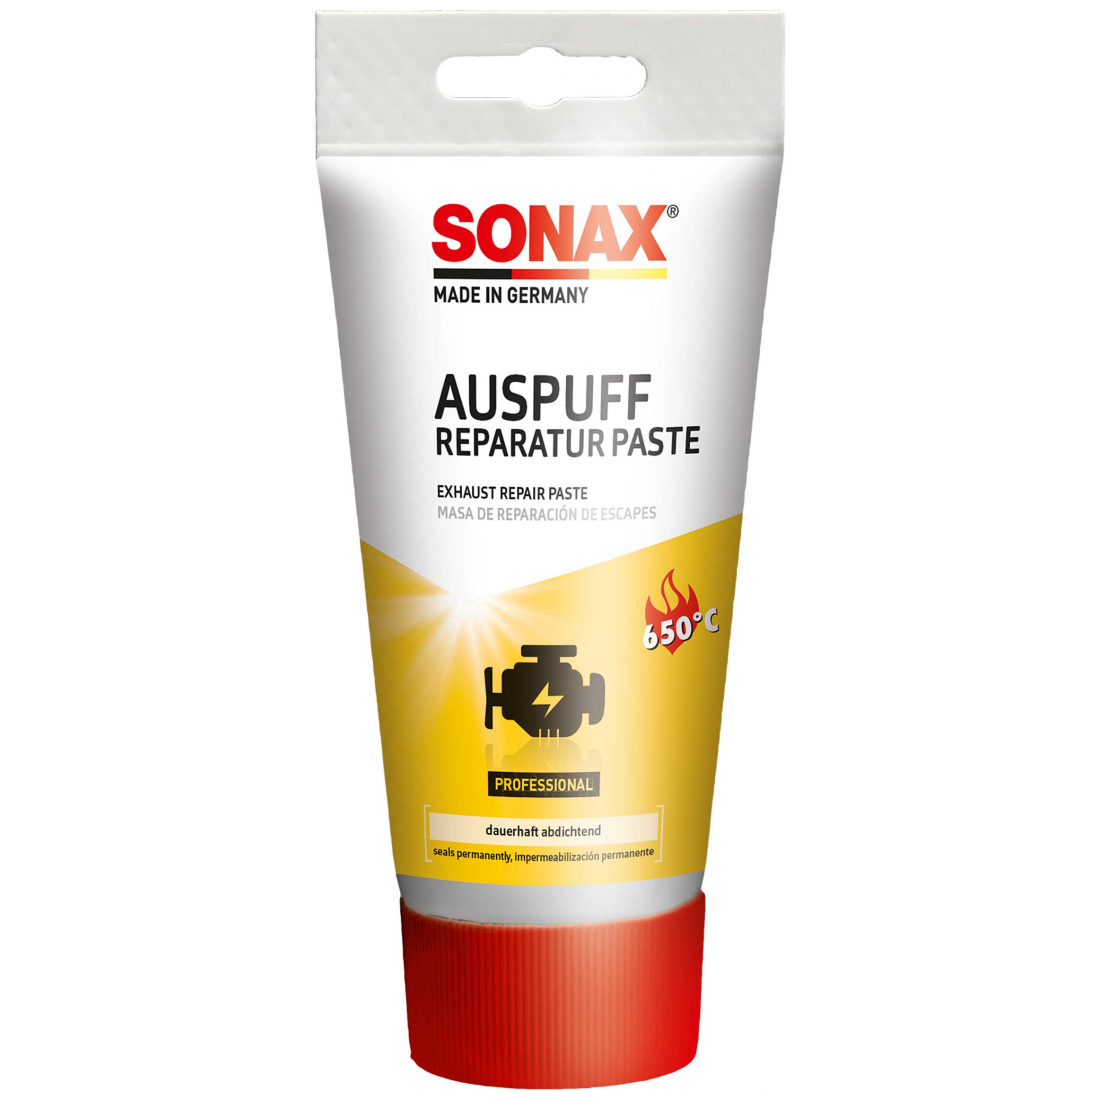 SONAX AuspuffReparaturPaste 200g